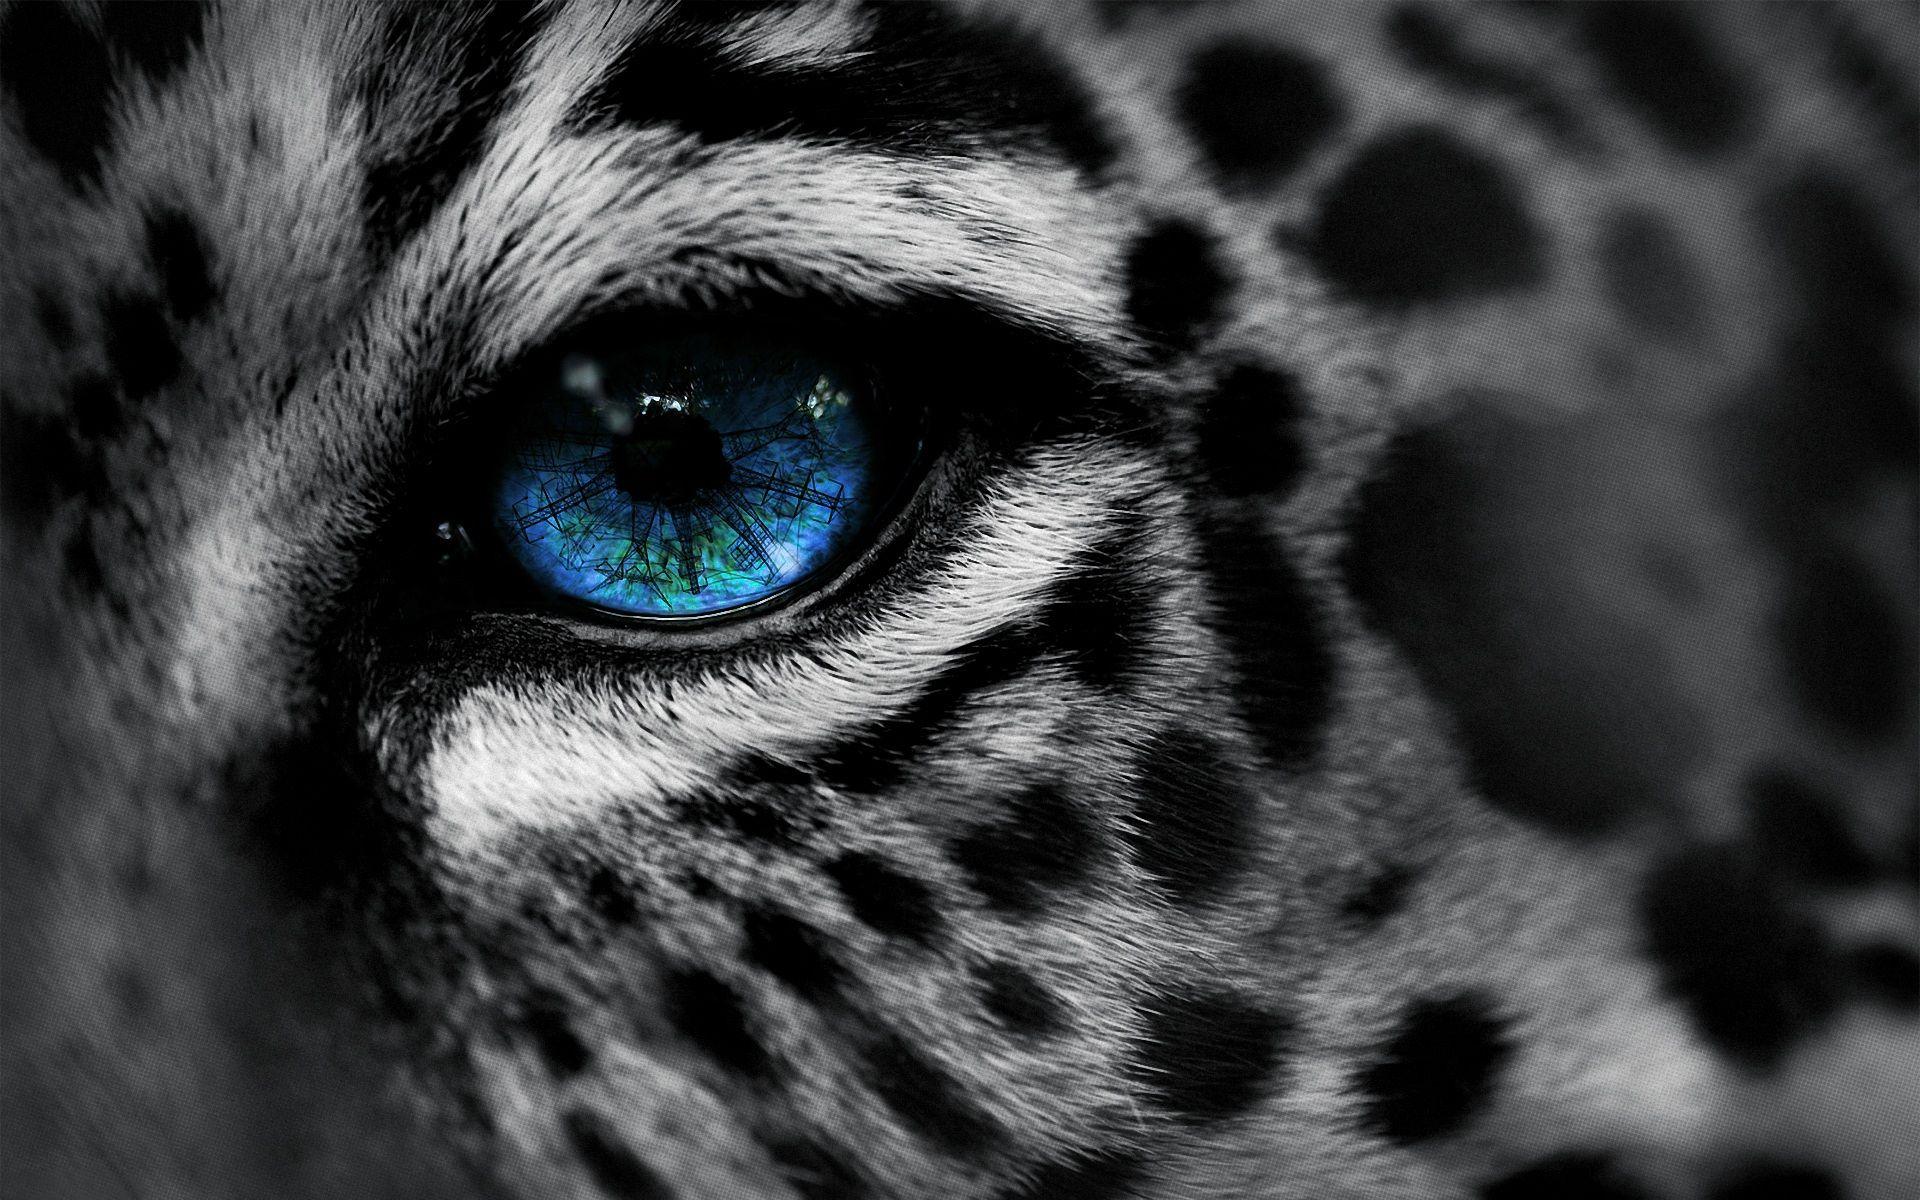 Tiger Eyes Wallpaper